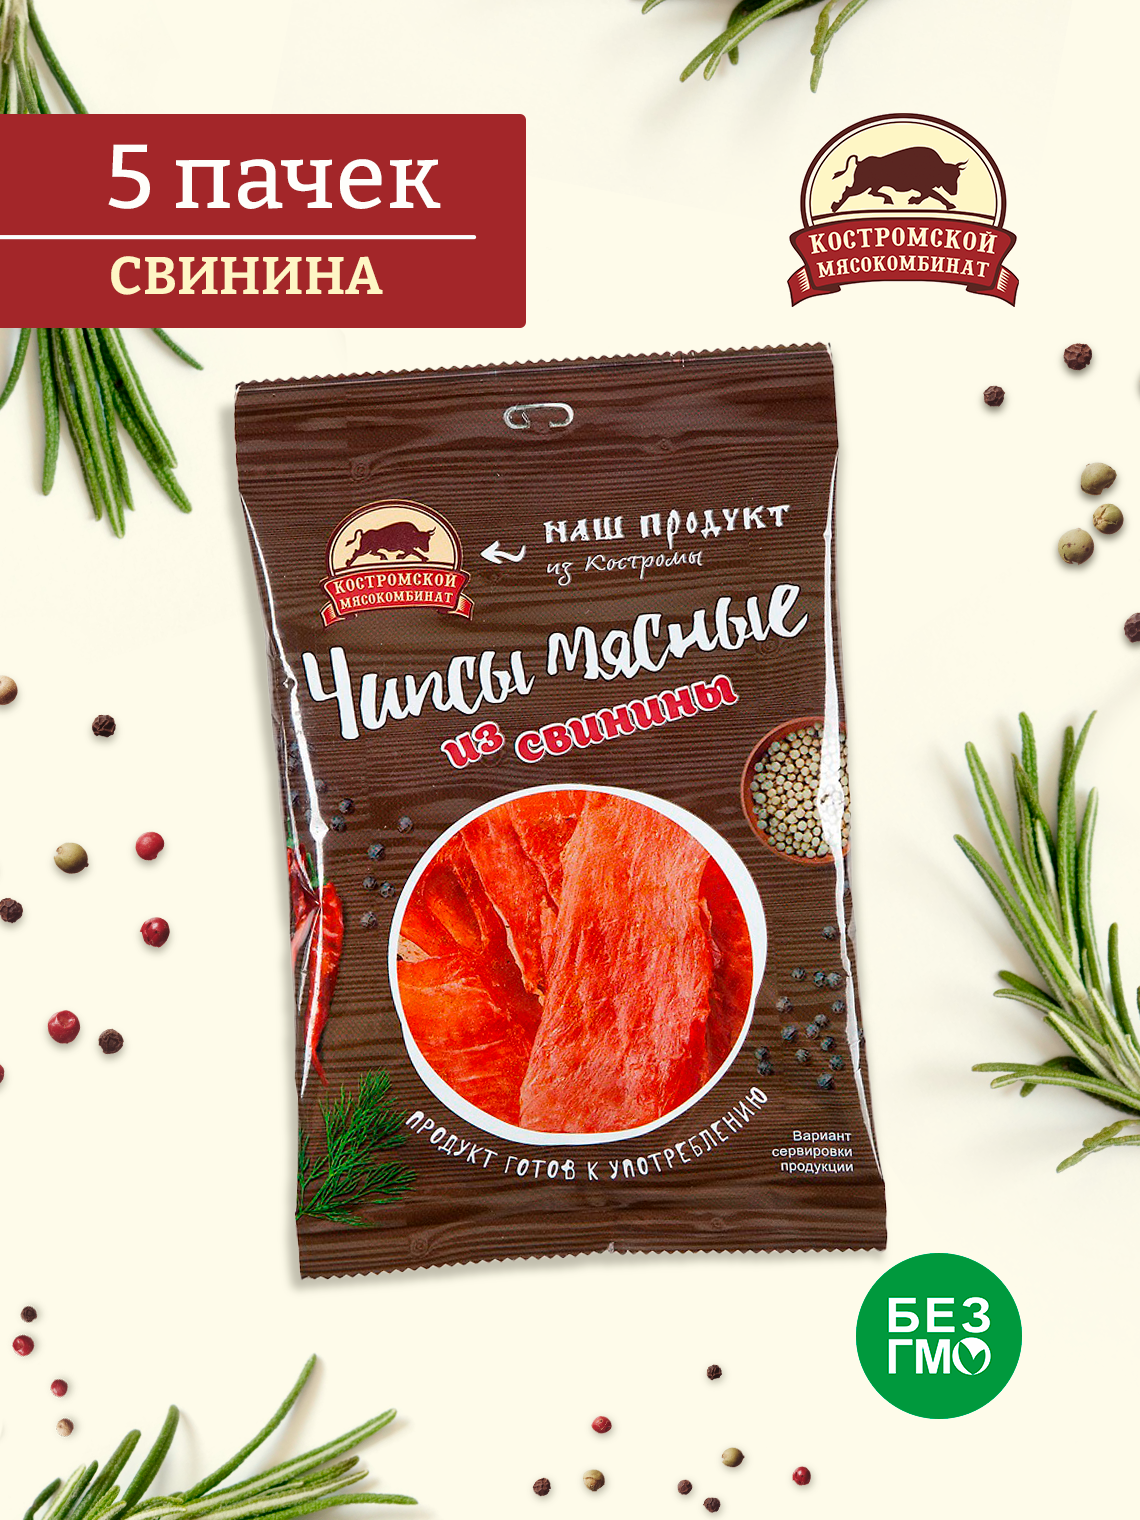 Чипсы мясные из свинины Костромской мясокомбинат, вяленое мясо набор 5 пачек по 40 гр.